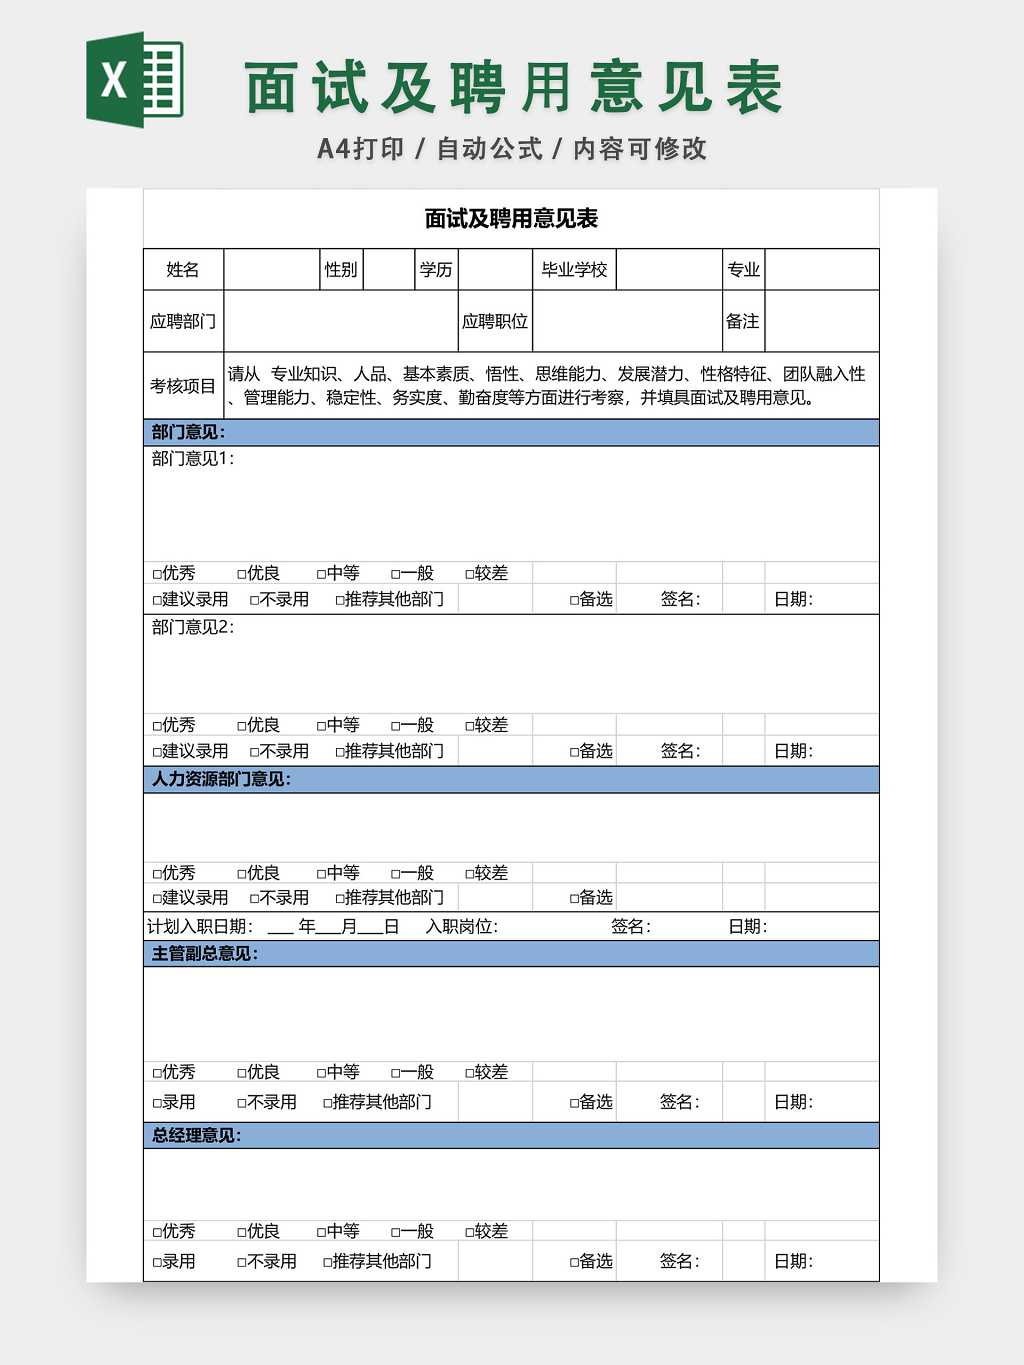 个人信息登记表excel免费下载_个人信息登记表模板excel格式下载-华军软件园